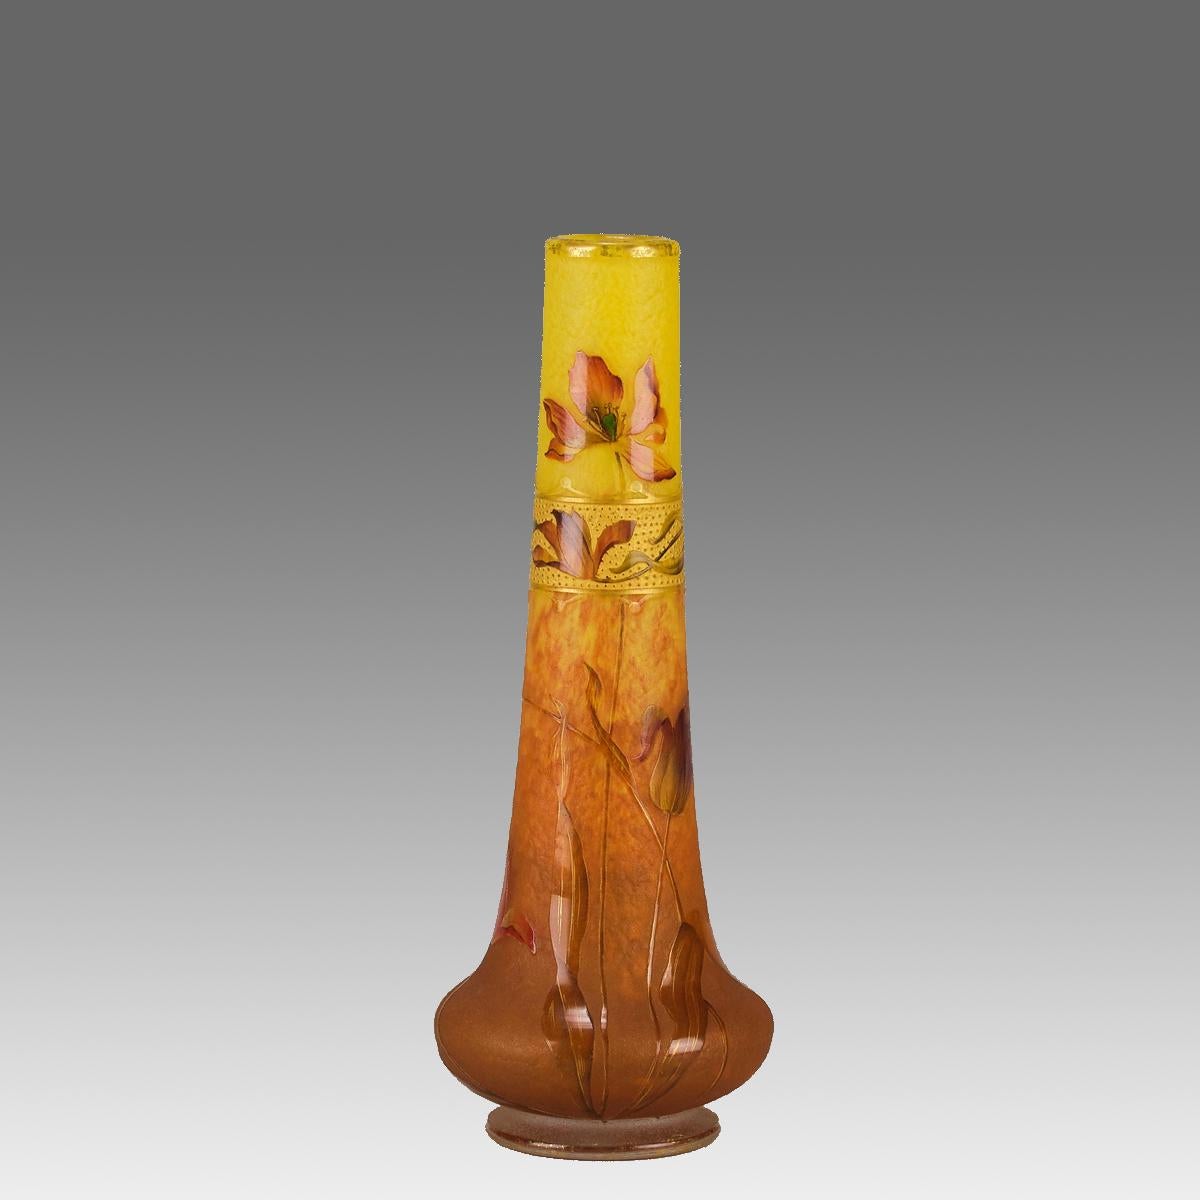 Un très beau vase en verre camée Art Nouveau du début du 20e siècle, gravé et émaillé de coquelicots en fleurs sur un fond jaune chaud à orange. Le dessin est rehaussé par la dorure de la surface pour donner une profondeur de champ spectaculaire, et